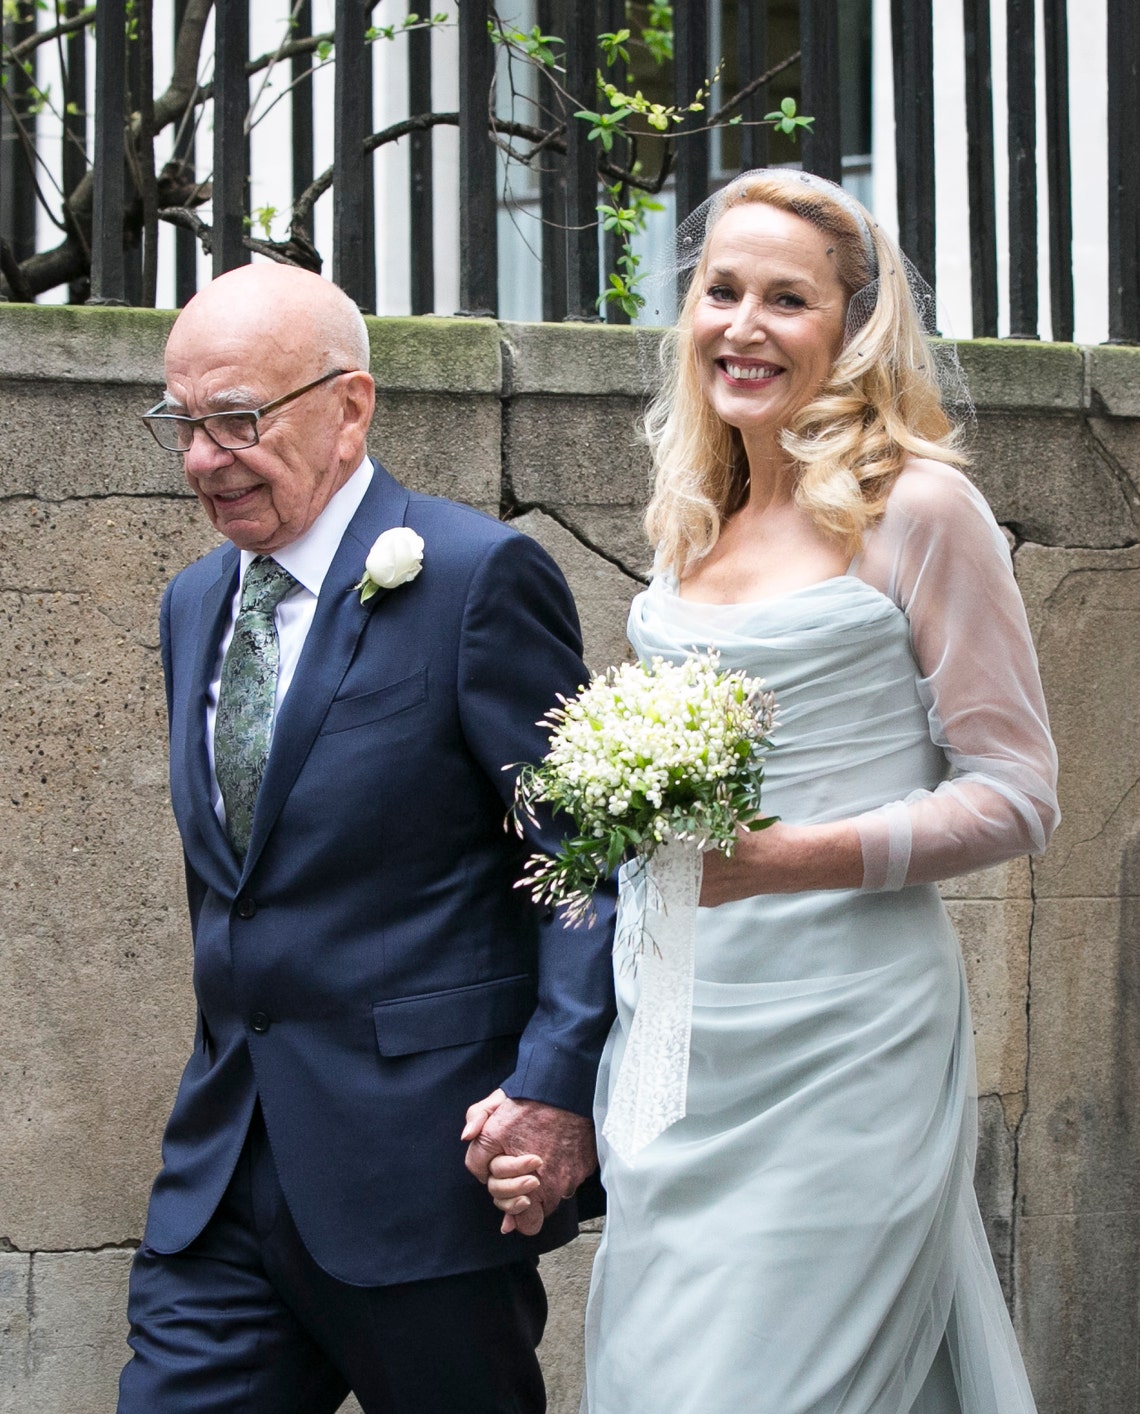 Jerry Hall Marries Rupert Murdoch